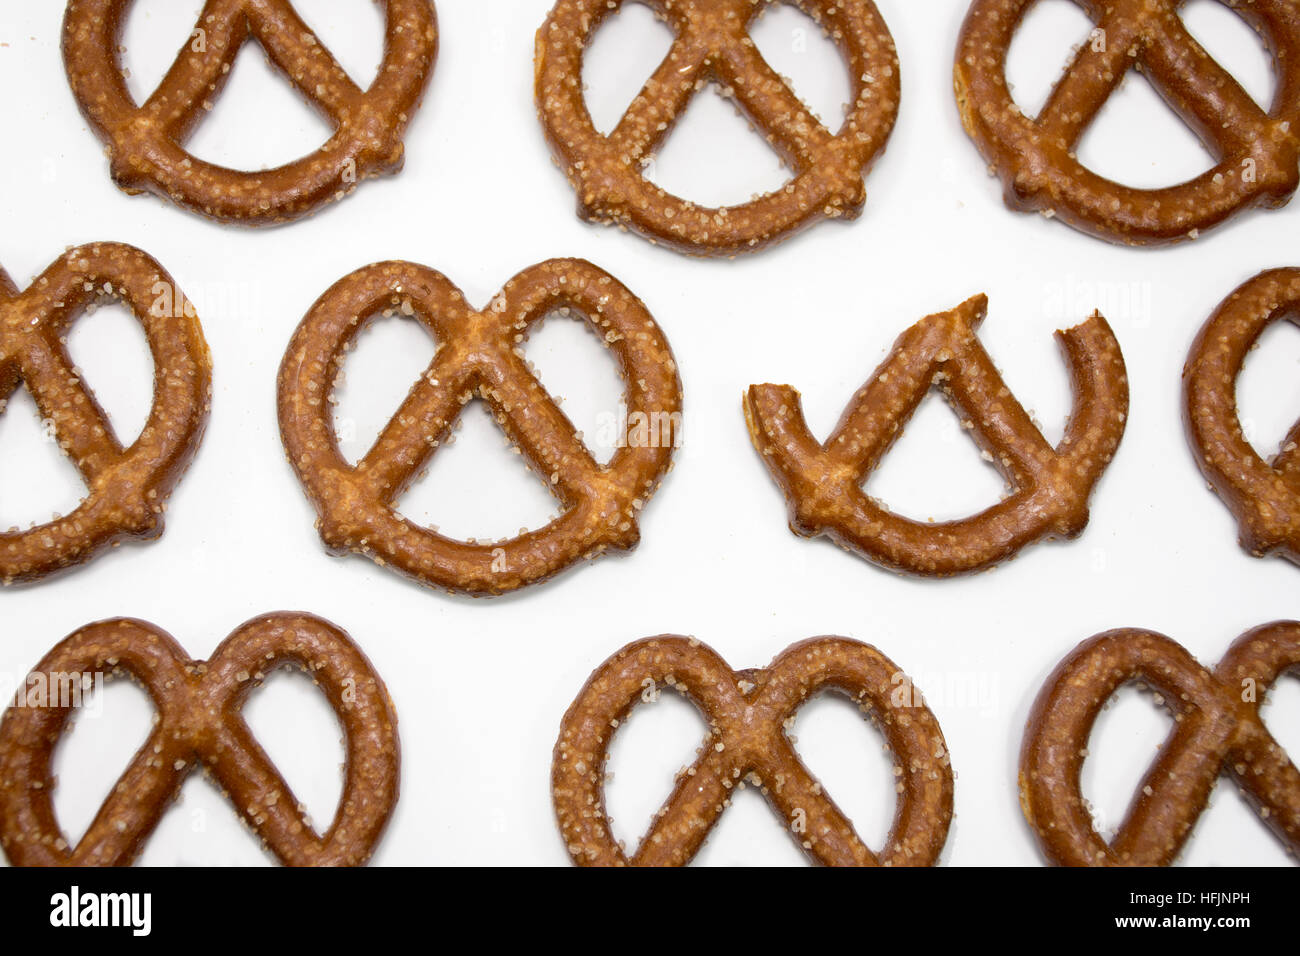 Concetto diverso - una mangiata pretzel tra un sacco di perfetta pretzel ordinato su sfondo bianco Foto Stock